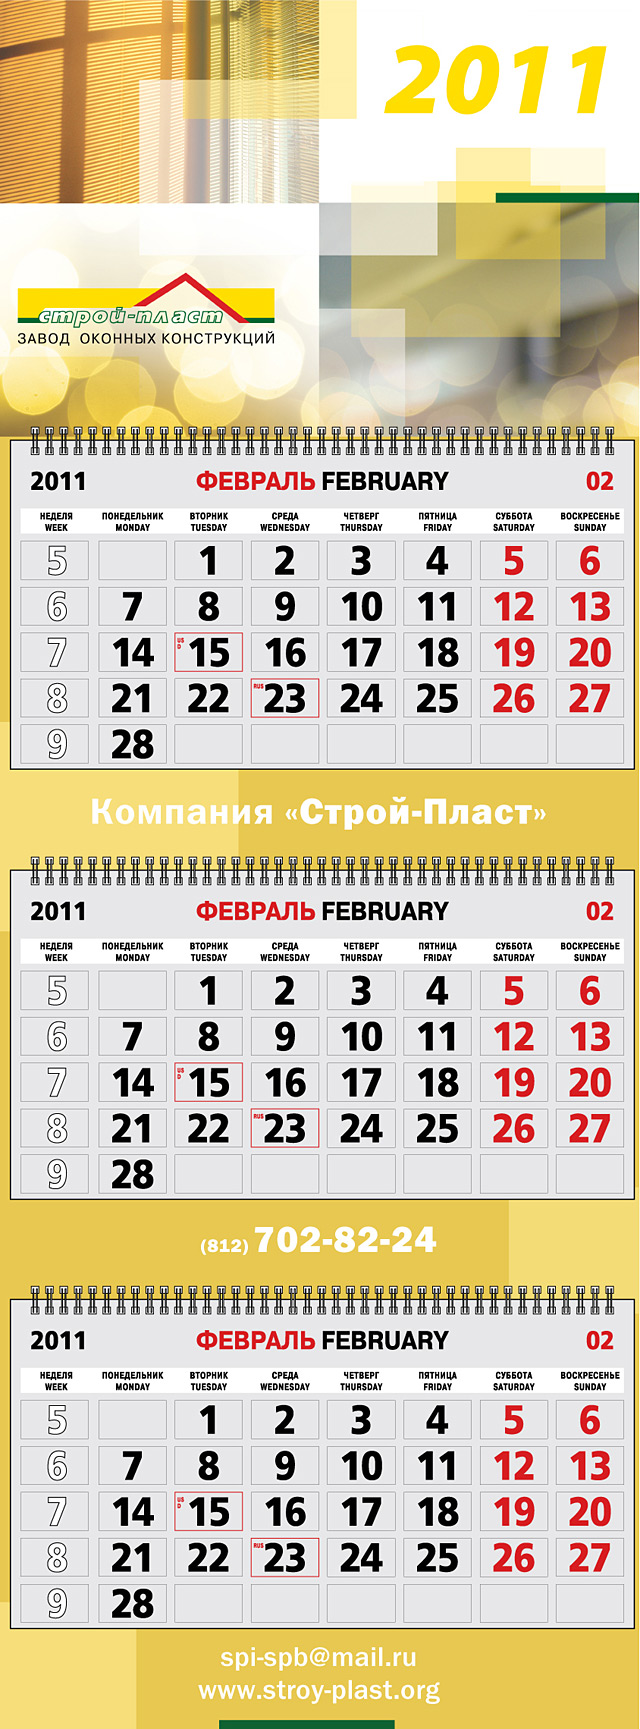 Календарь для компании «Строй-Пласт»